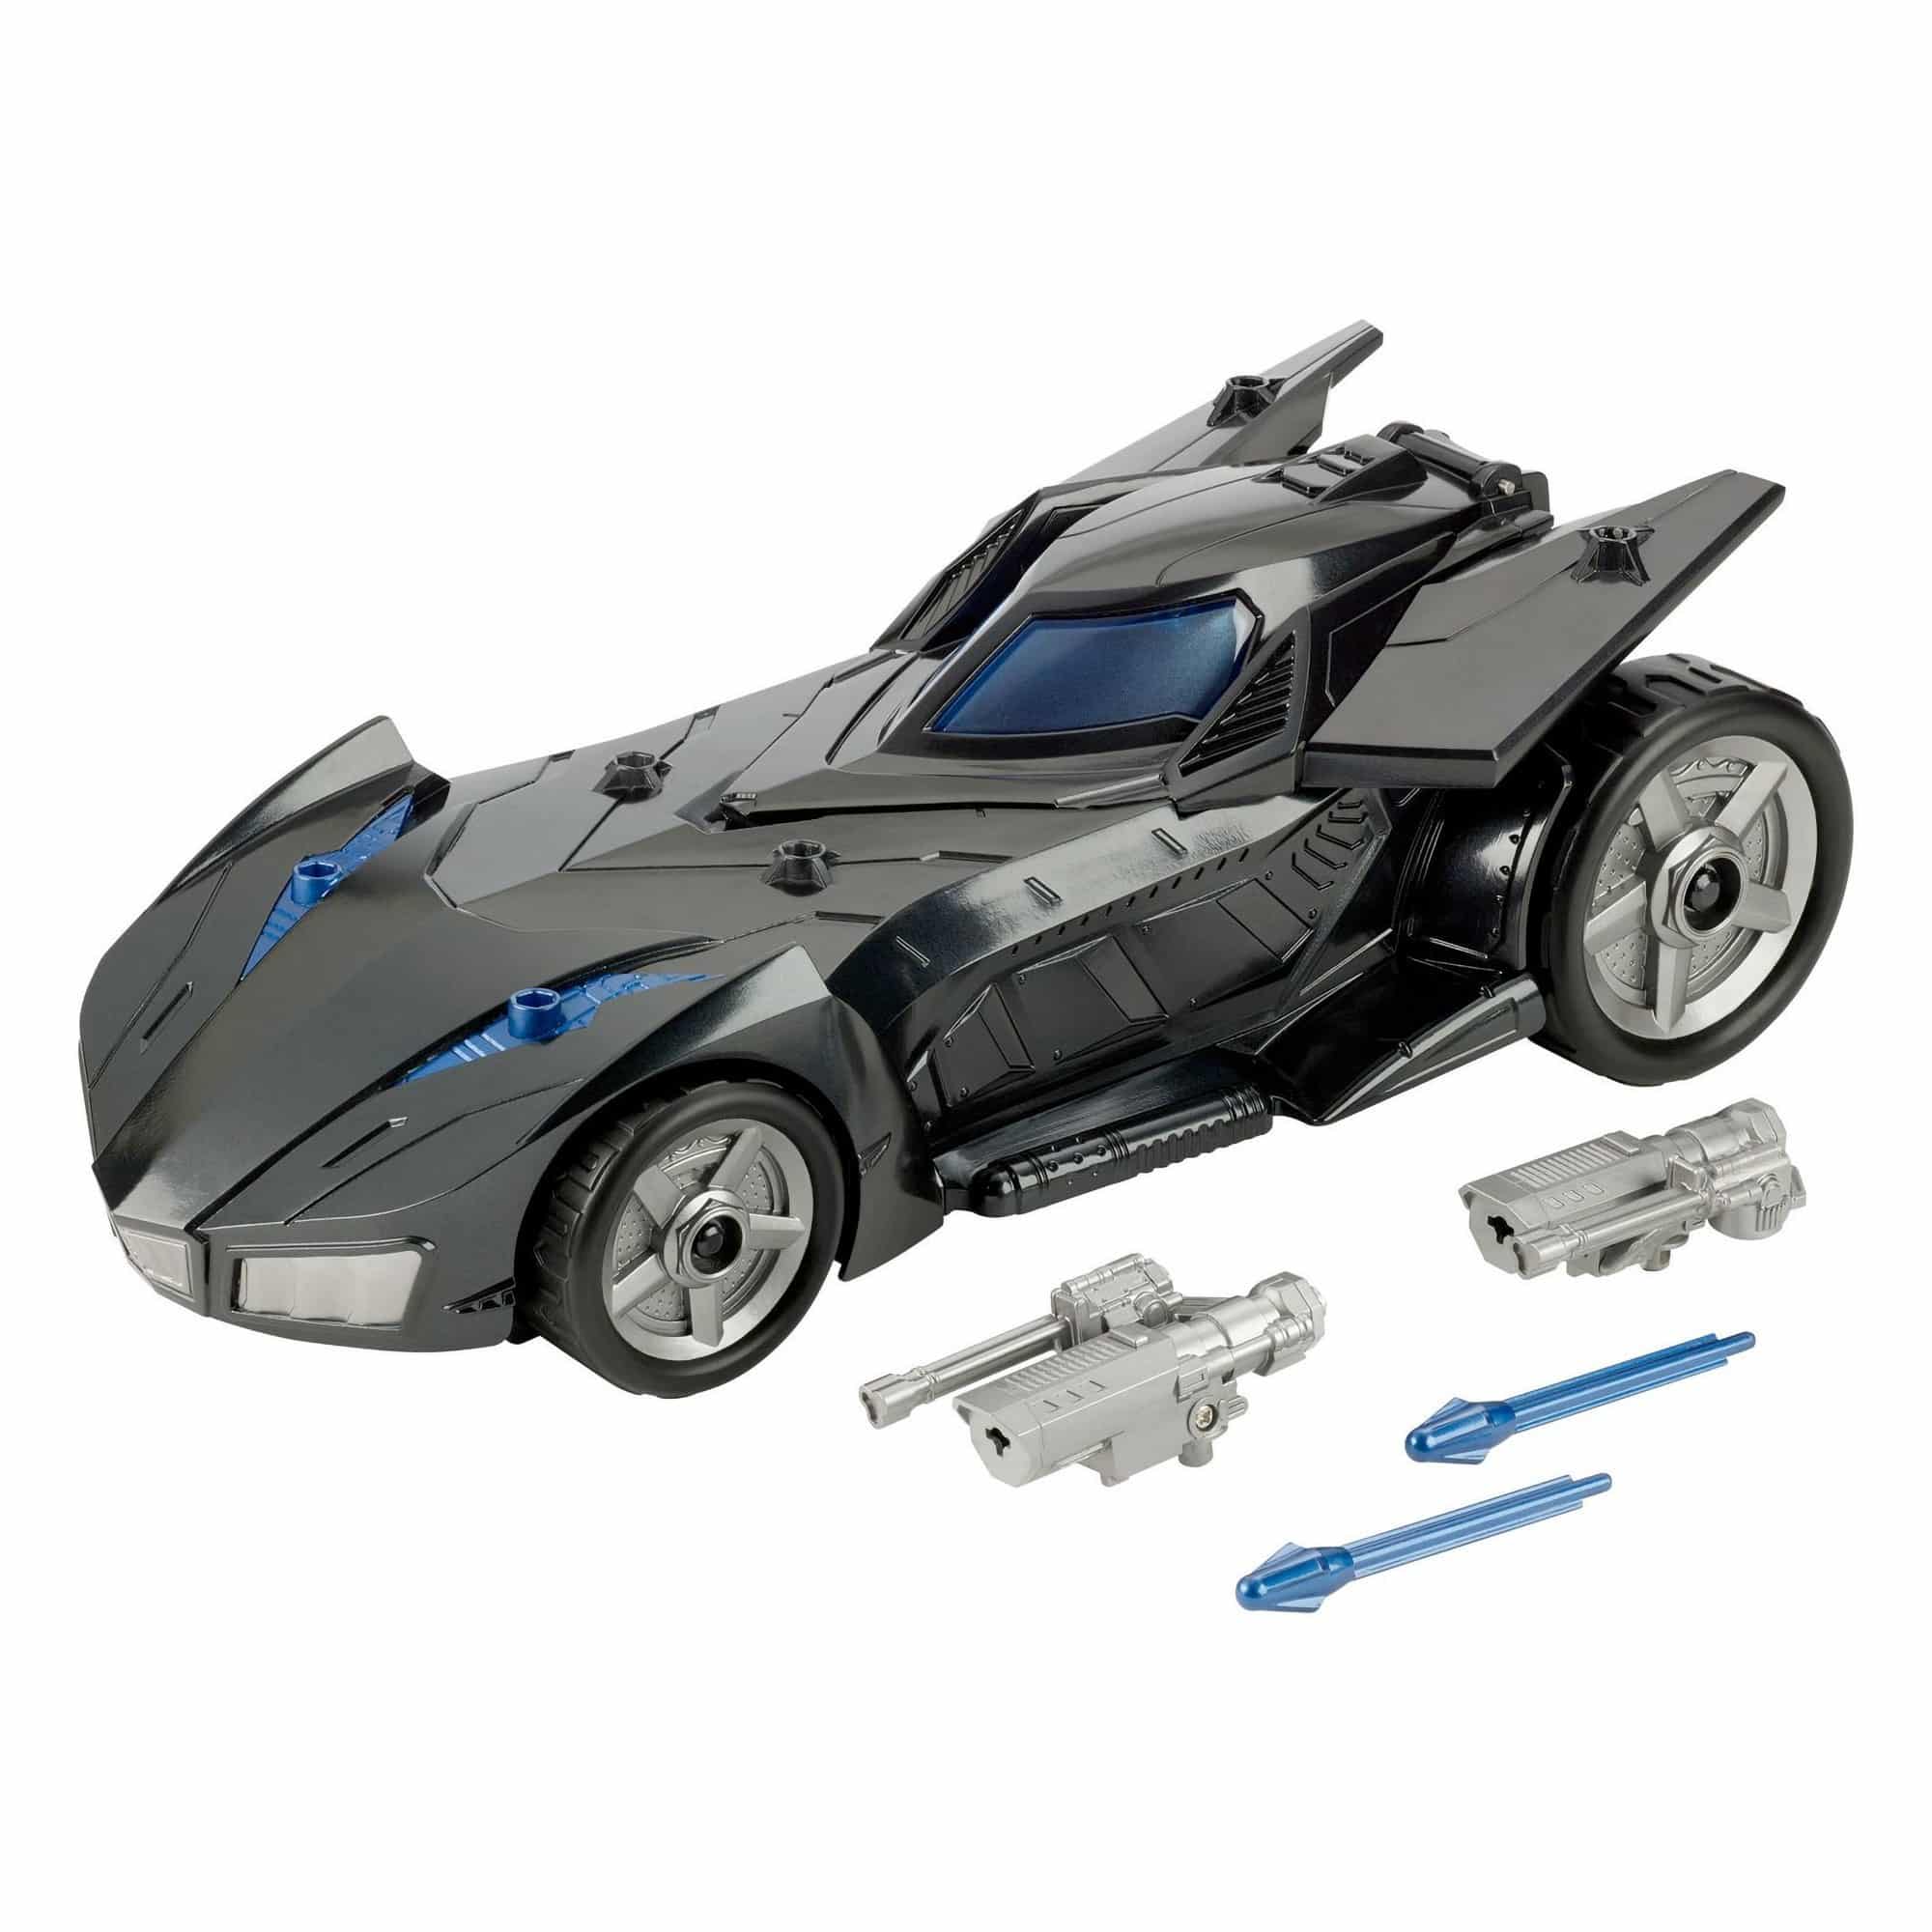 DC Kids - Batman Missions Missle Launcher Batmobile Vehicle